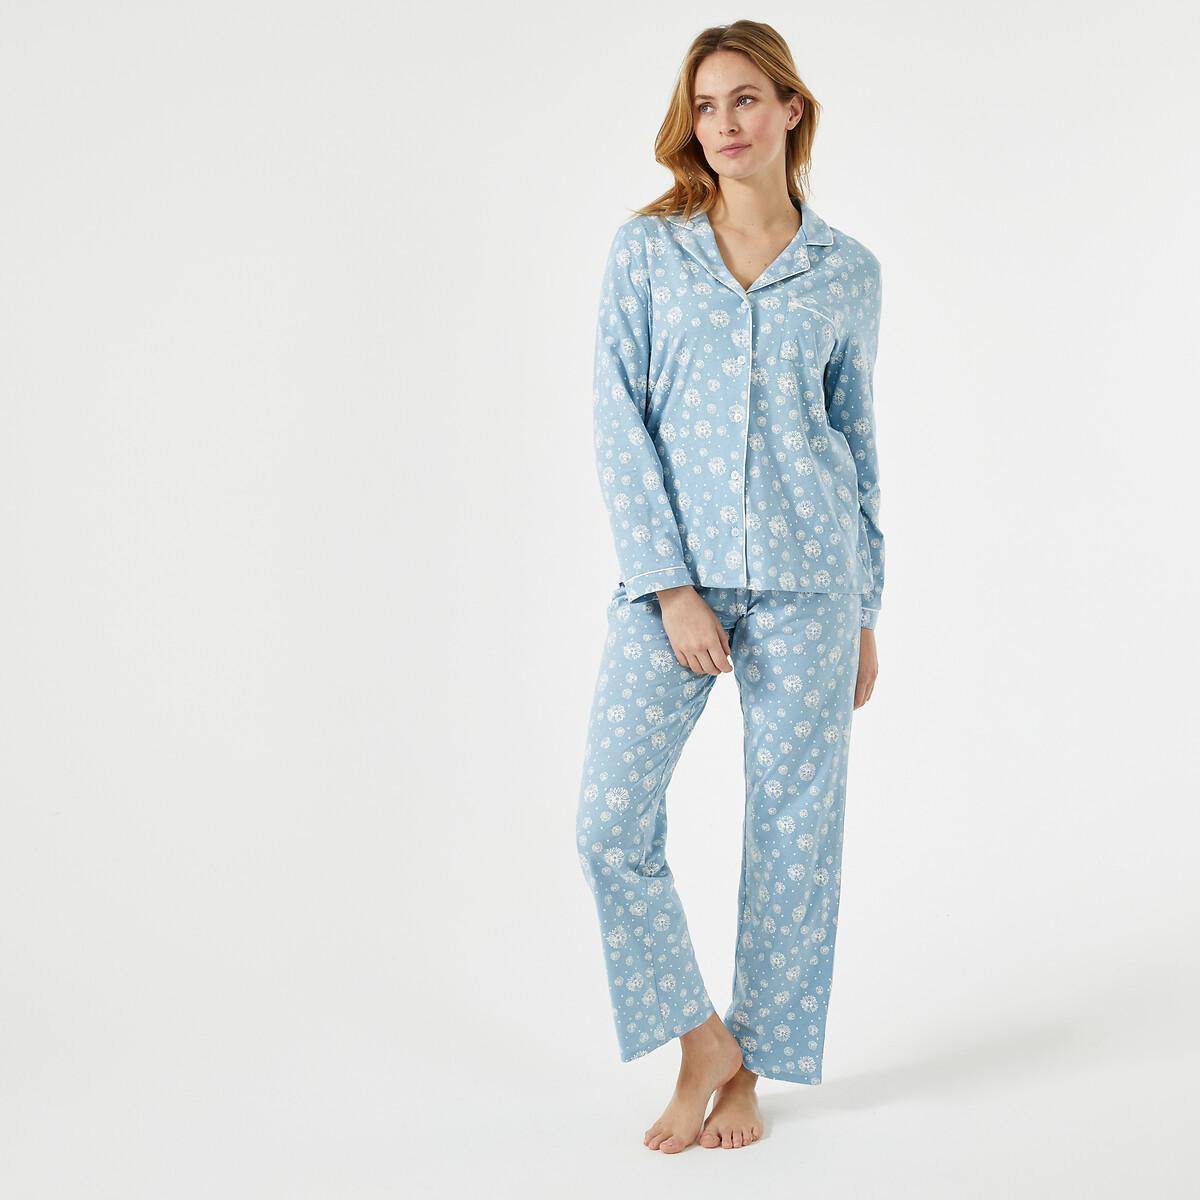 Bedruckter Pyjama Mit Langen Ärmeln Damen Weiss Bedruckt 42 von La Redoute Collections